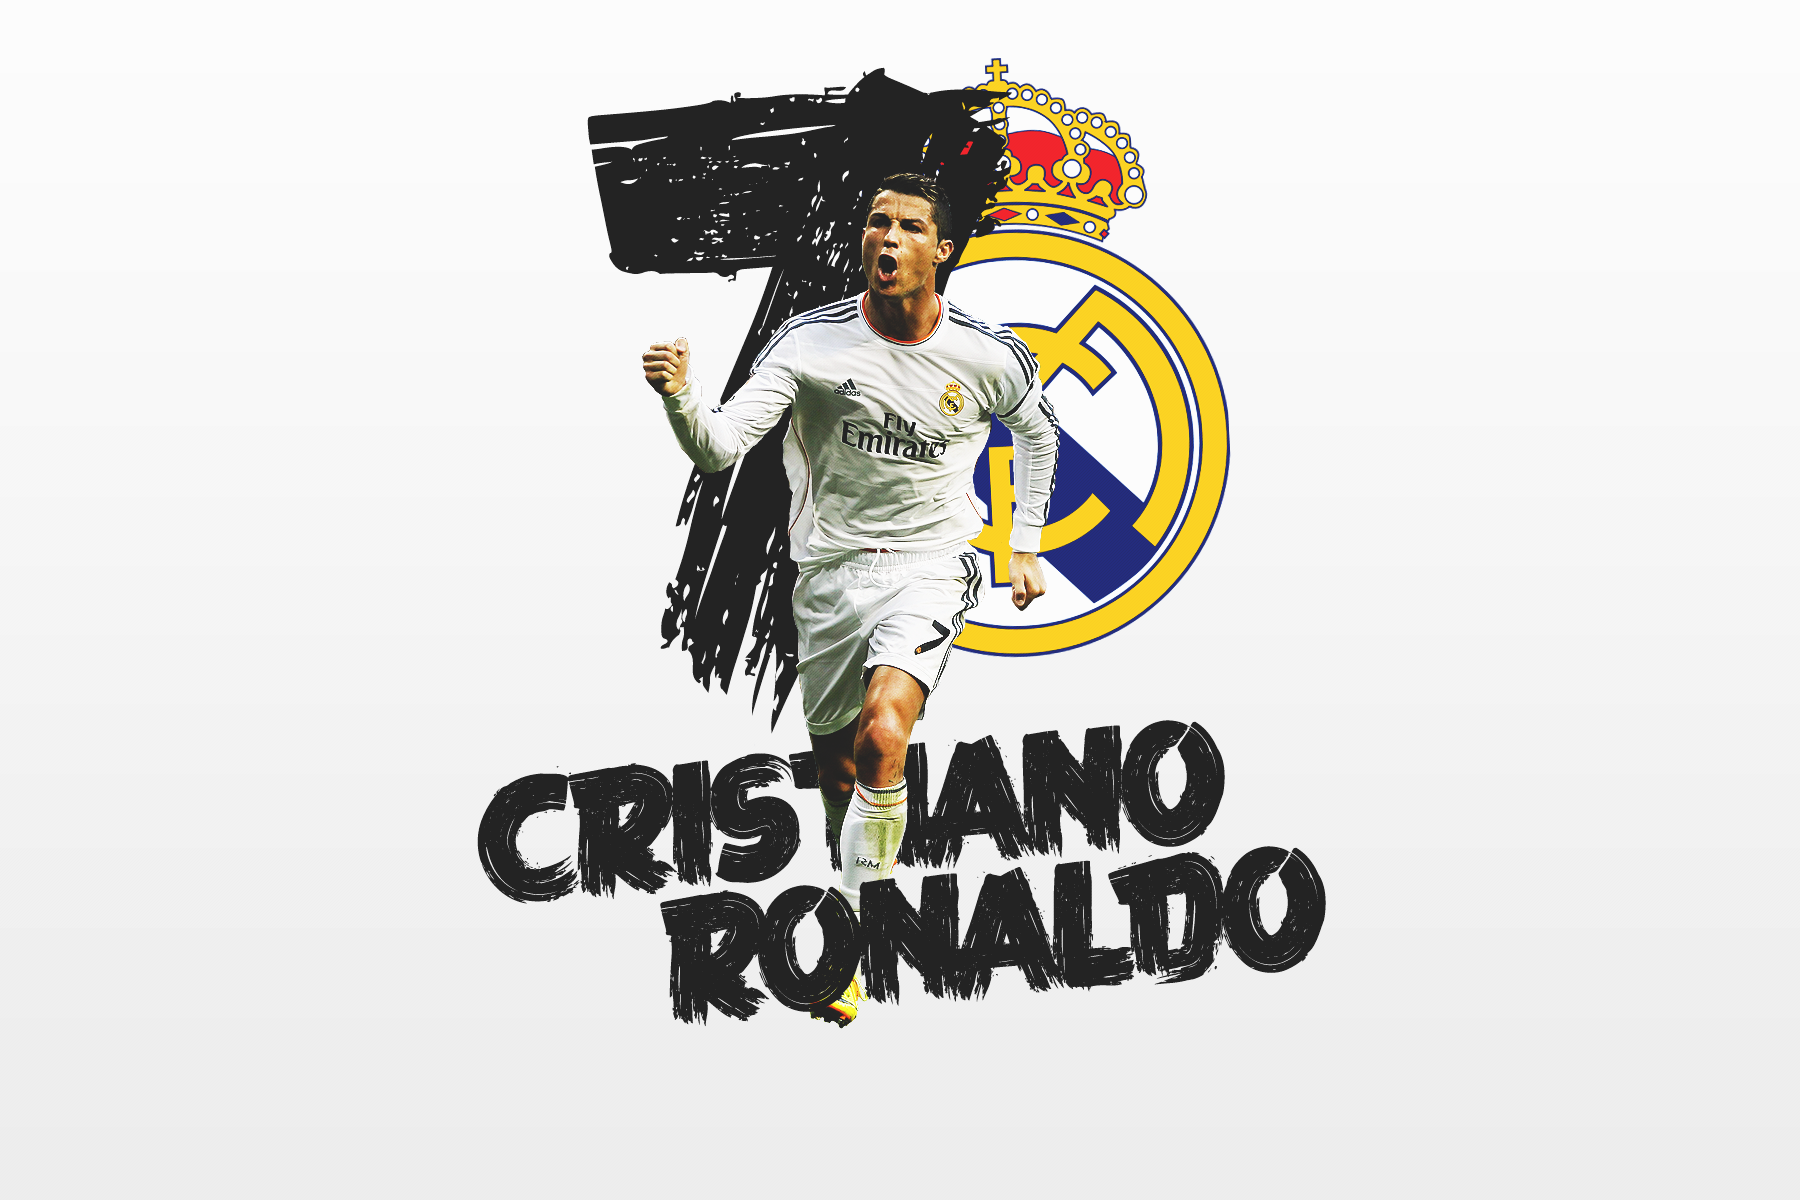 Wallpaper Cr7 Atau Cristiano Ronaldo Gambar